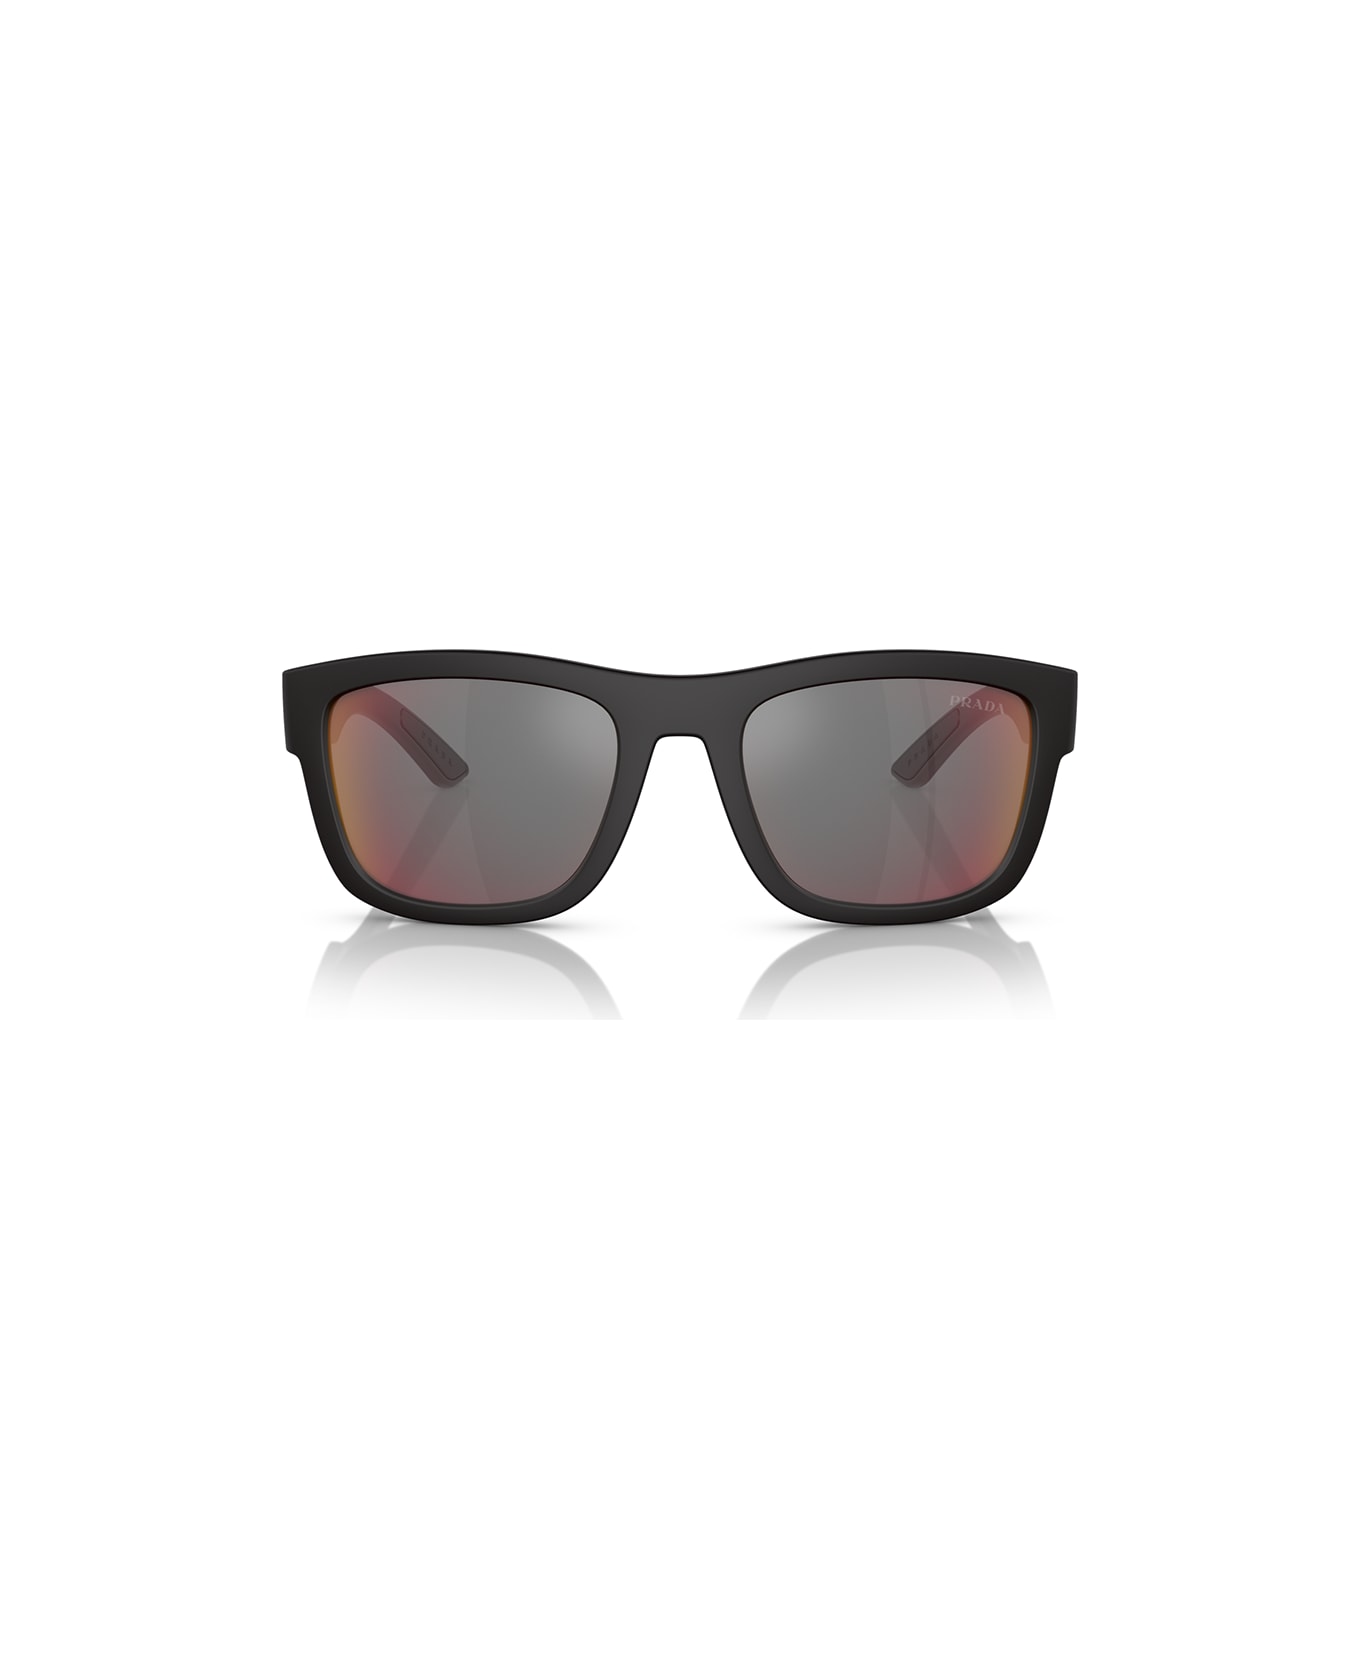 Prada Linea Rossa Sunglasses - Nero/Rosso specchiato